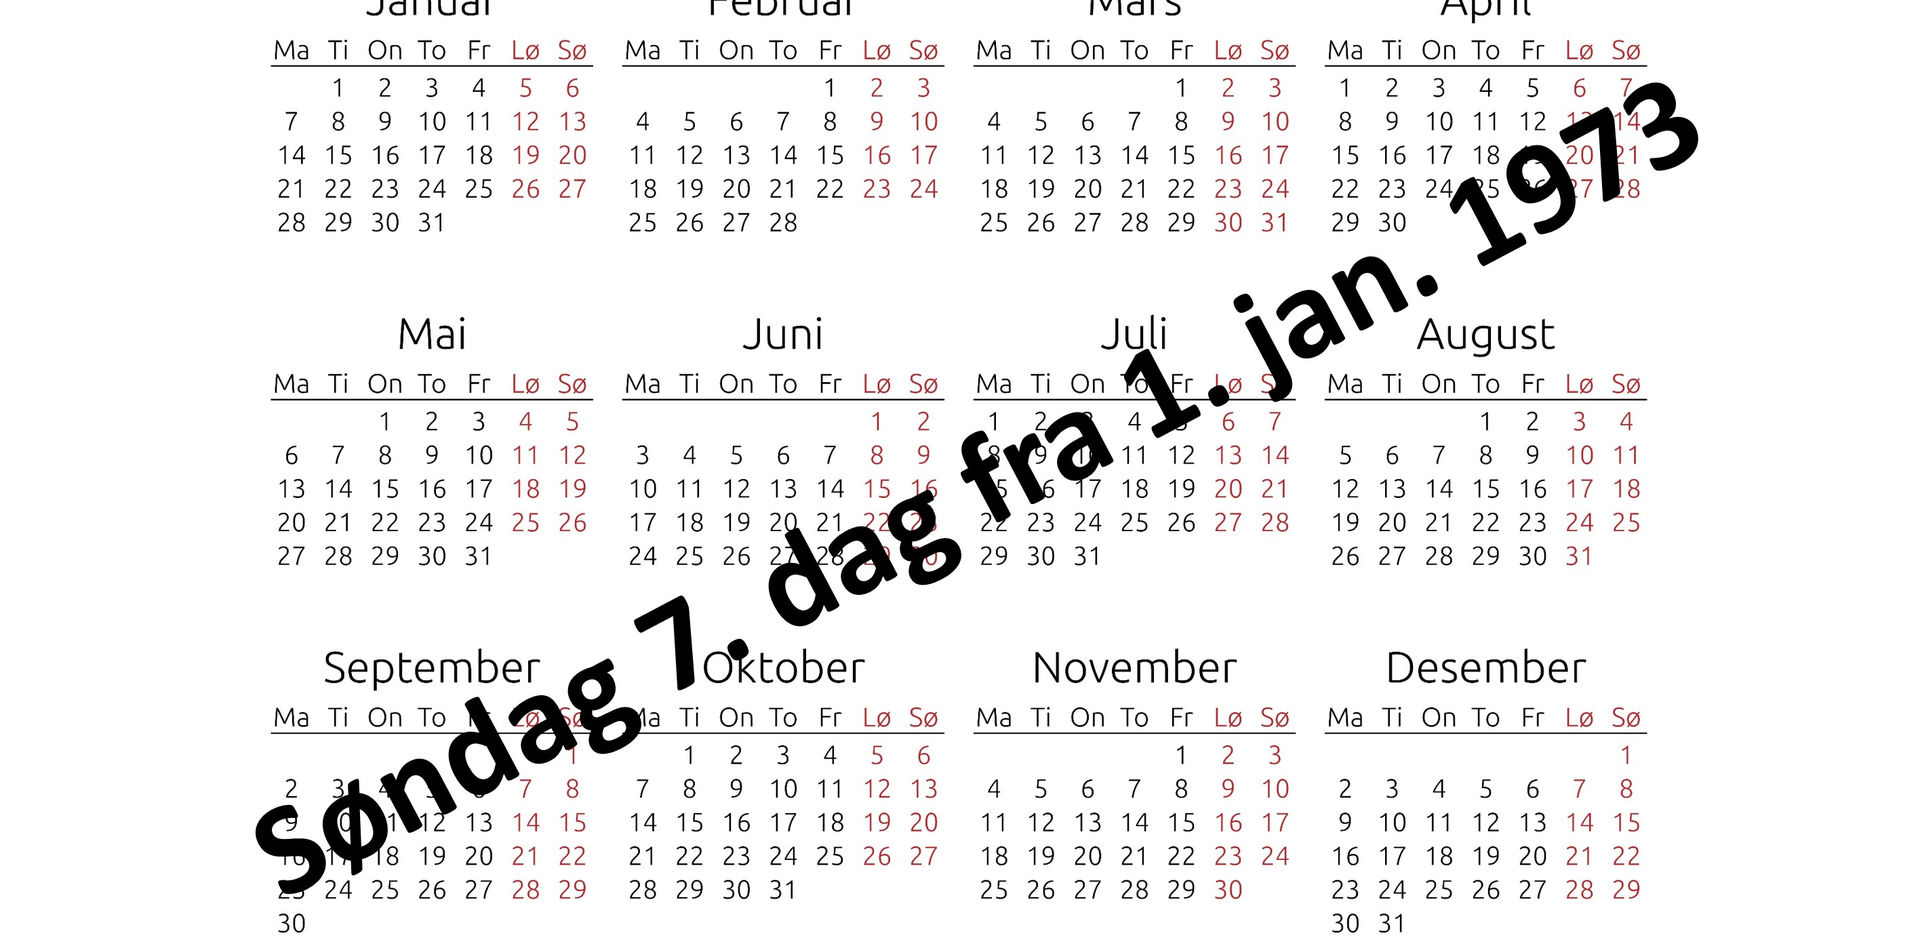 Kalender reform